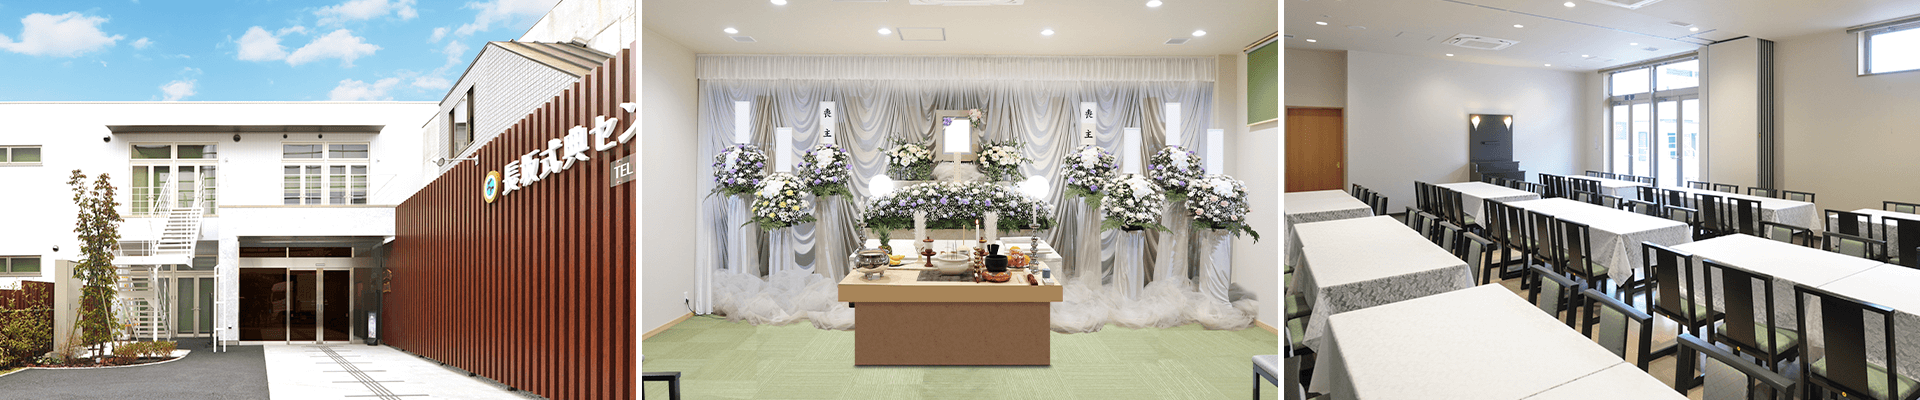 葬儀・葬式・家族葬なら16.5万円からできる長坂式典センター 東村山市の葬儀場一覧